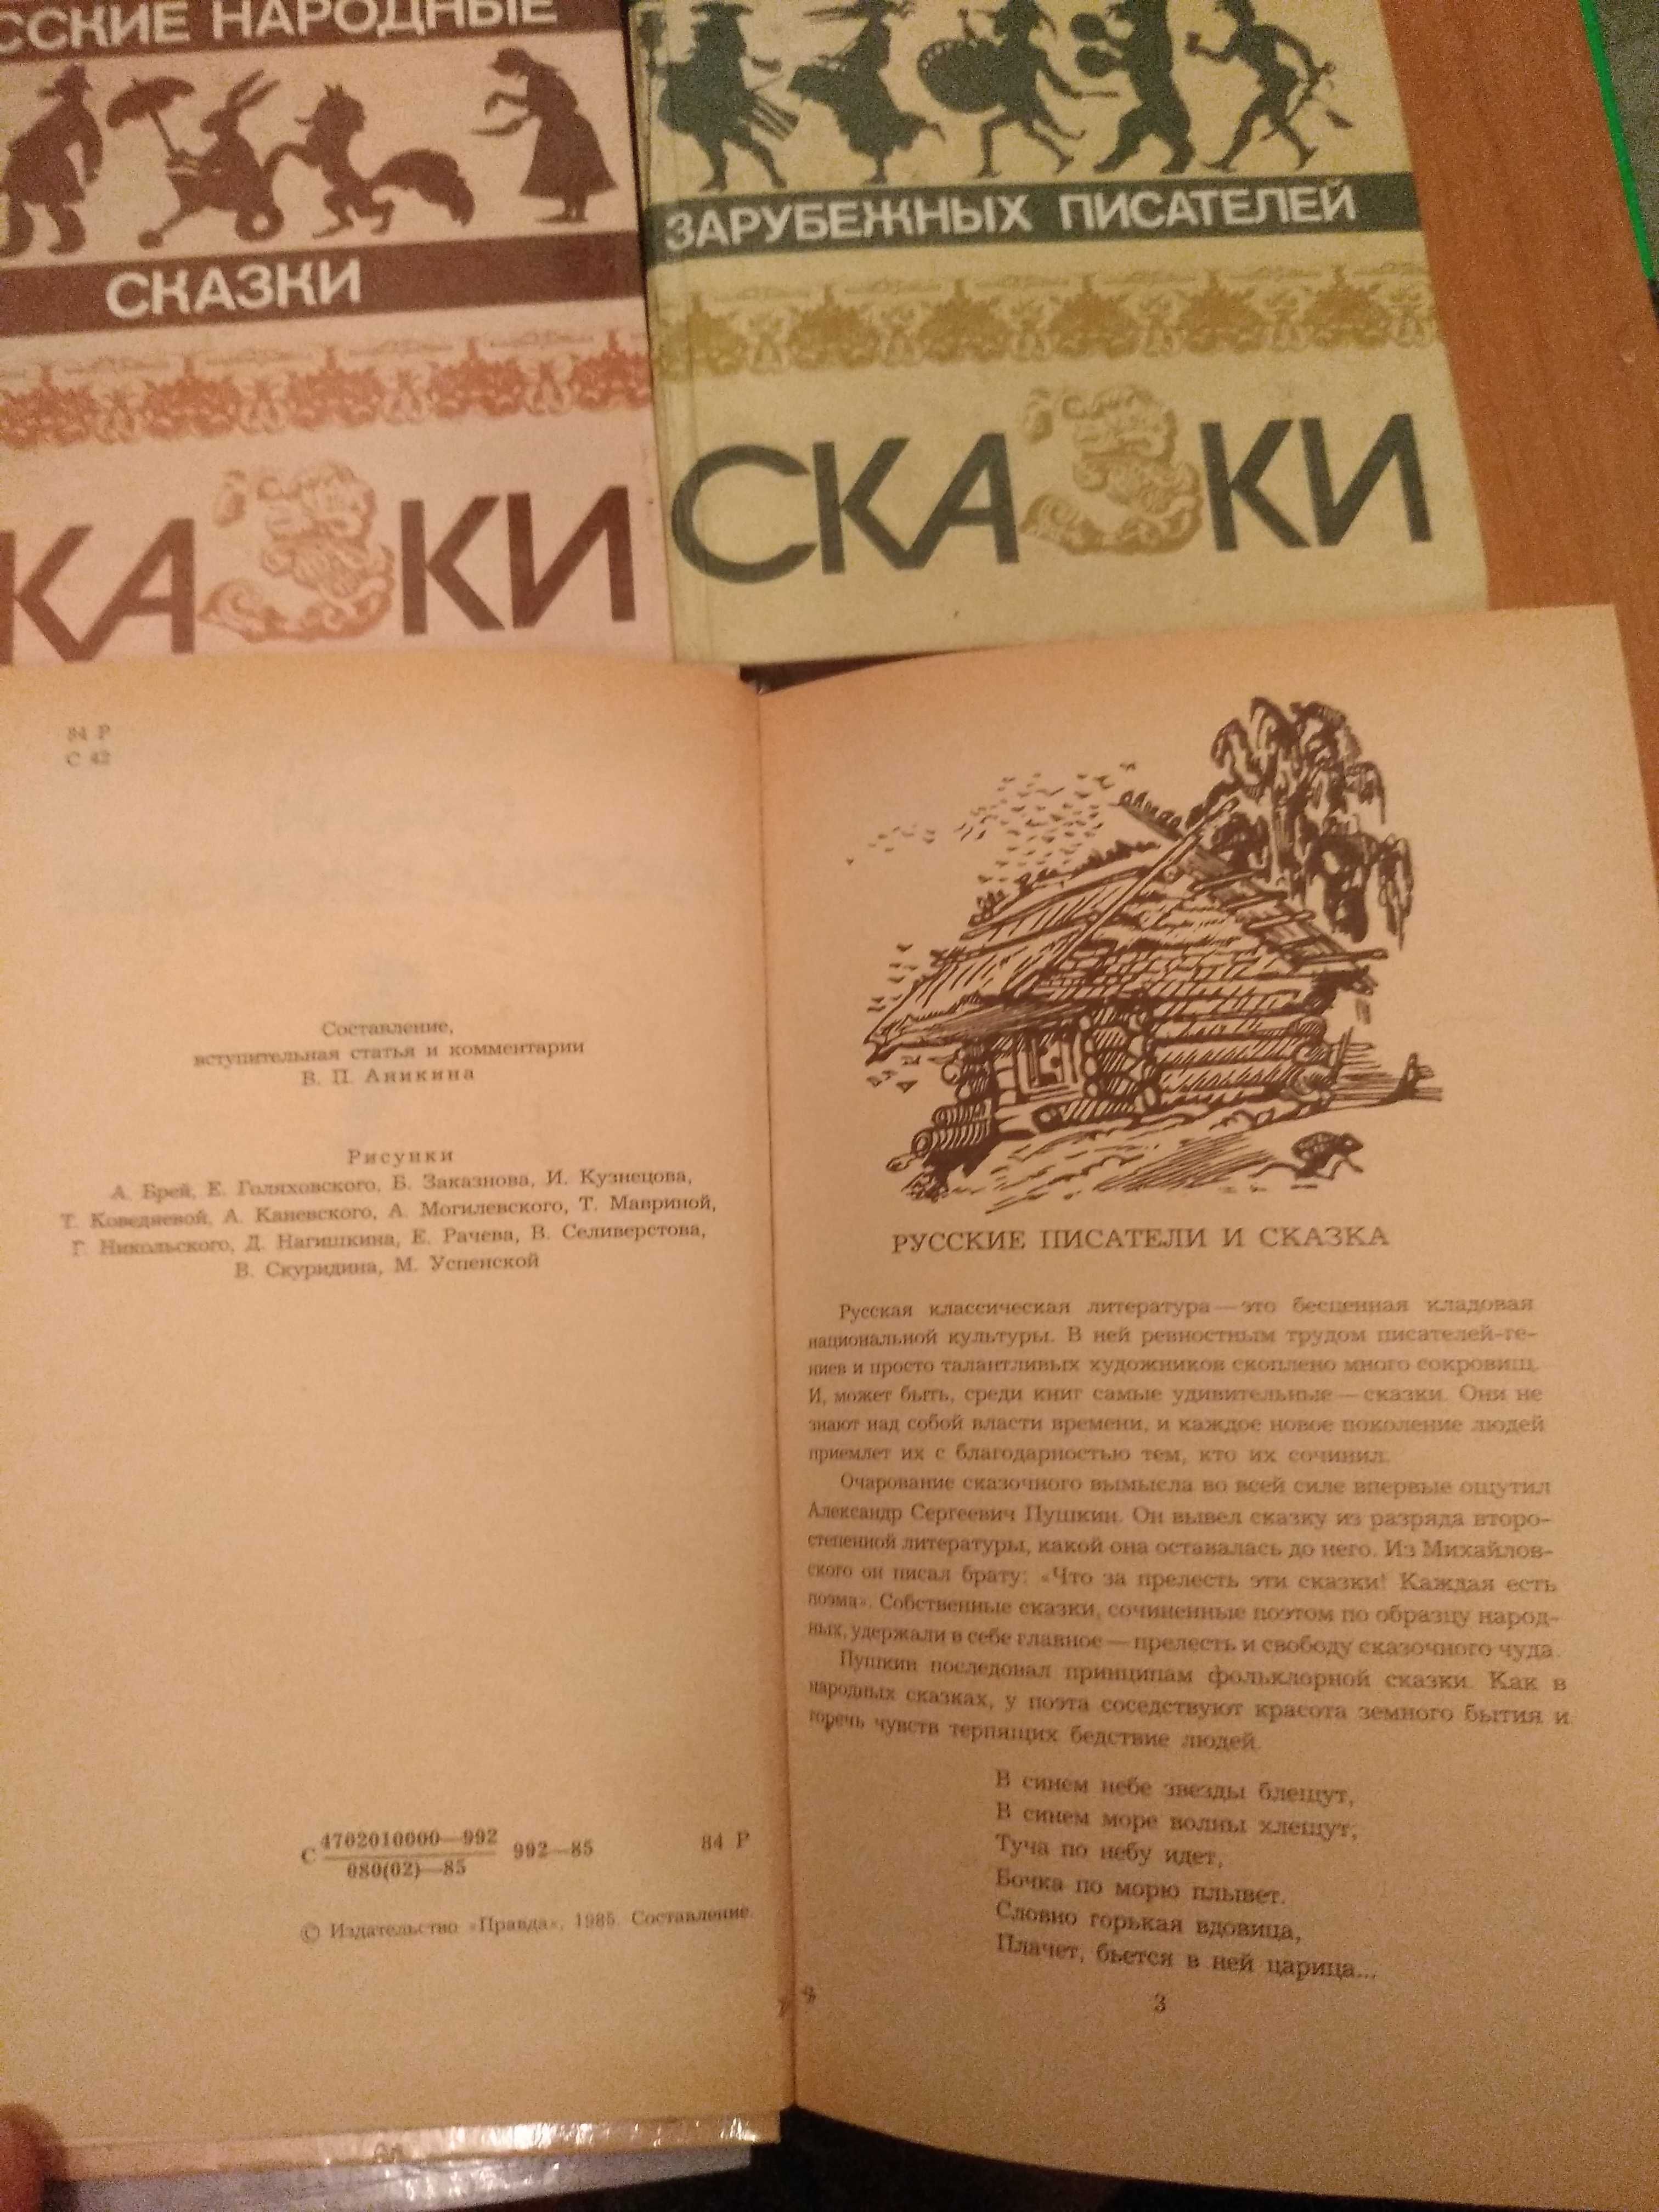 Збірка "Русские народные сказки и Сказки народов мира", 4 книги.